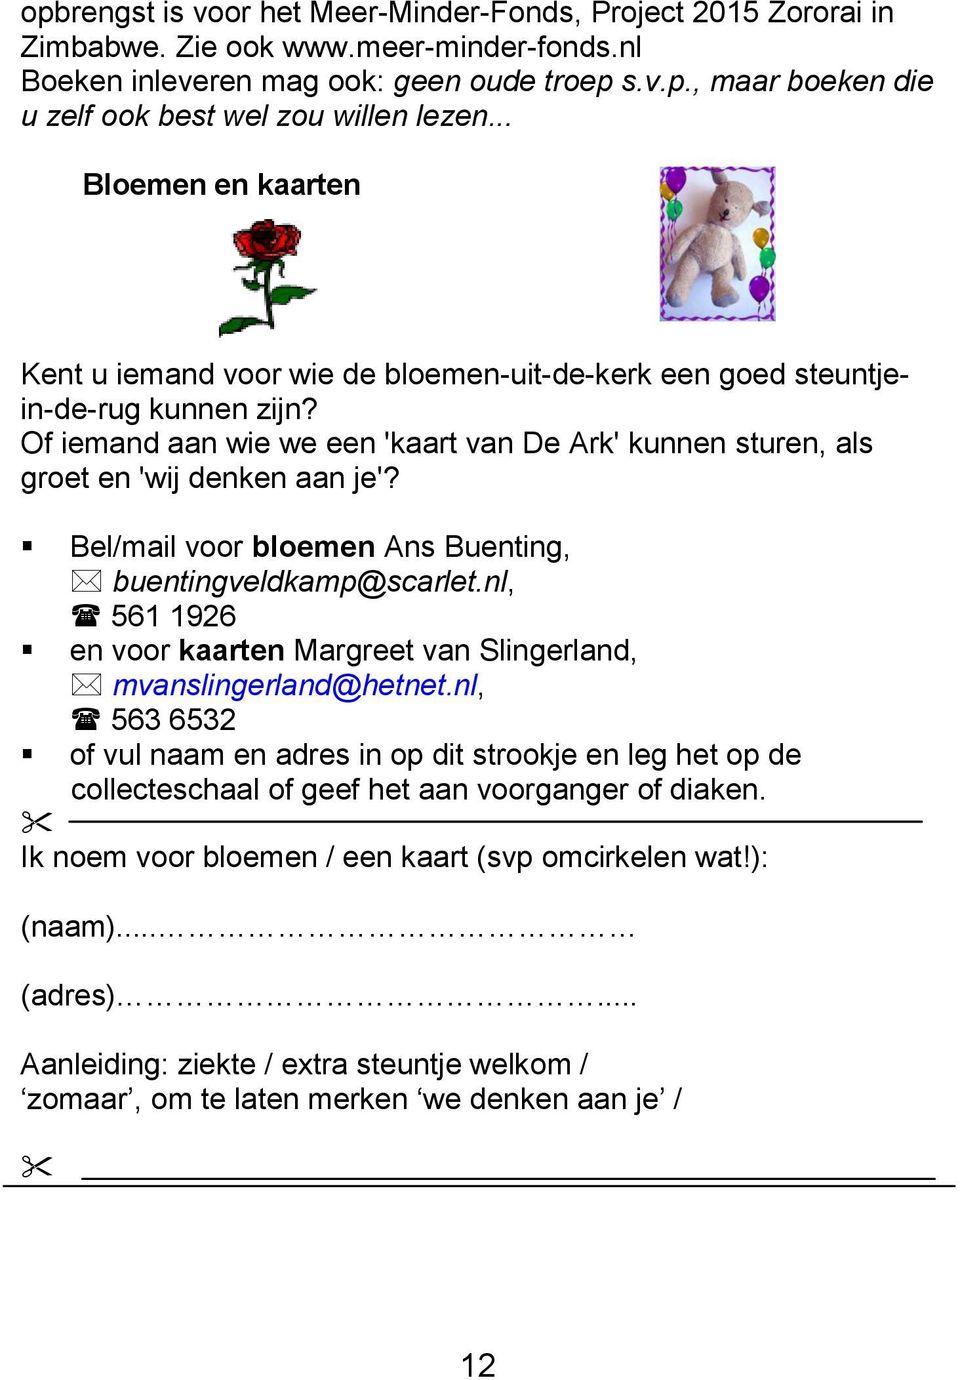 Bel/mail voor bloemen Ans Buenting, buentingveldkamp@scarlet.nl, 561 1926 en voor kaarten Margreet van Slingerland, mvanslingerland@hetnet.